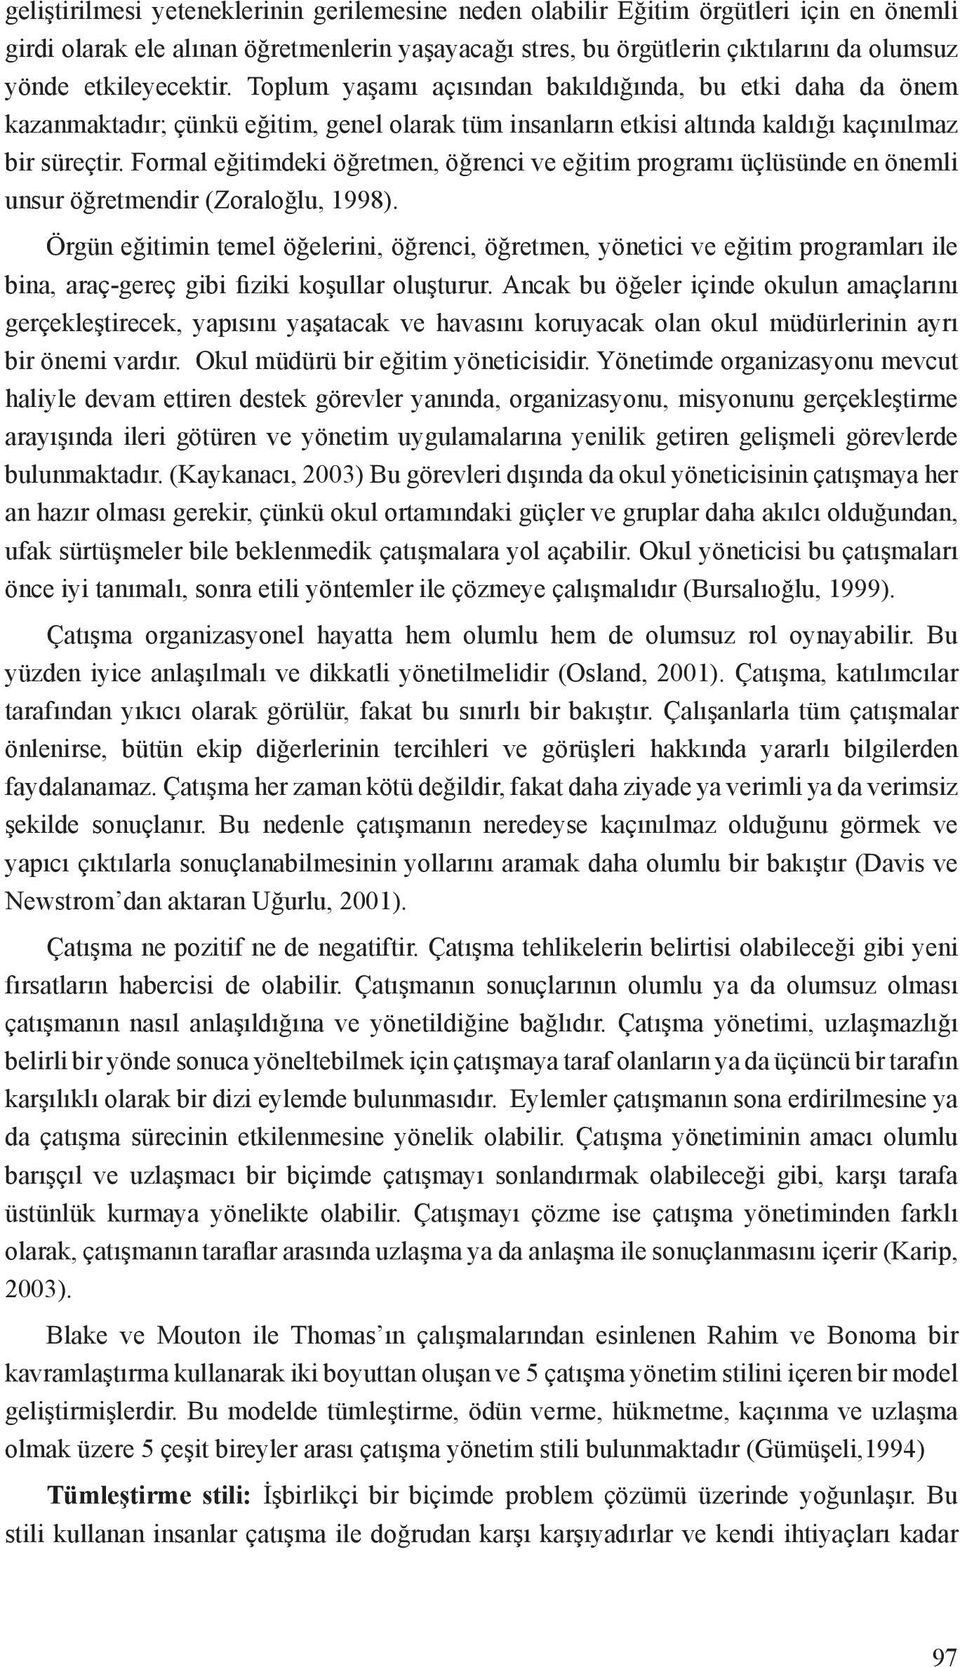 Formal eğitimdeki öğretmen, öğrenci ve eğitim programı üçlüsünde en önemli unsur öğretmendir (Zoraloğlu, 1998).